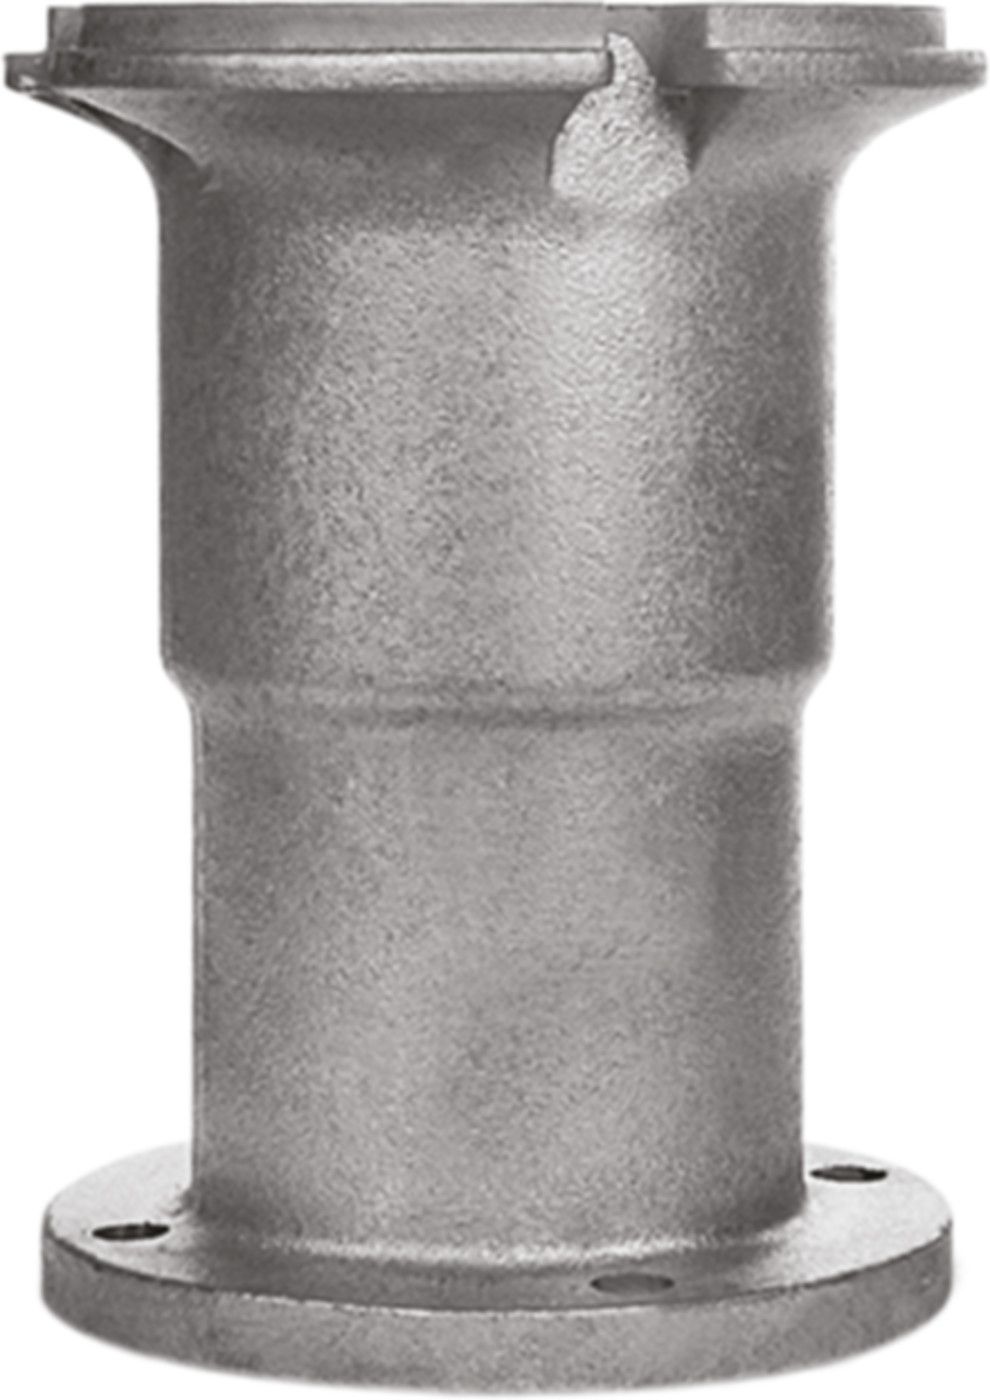 Obere Hydrantenverlängerung Fig. 7990 mit Spindelverlängerung H = 600mm - Von Roll Hydrantenzubehör